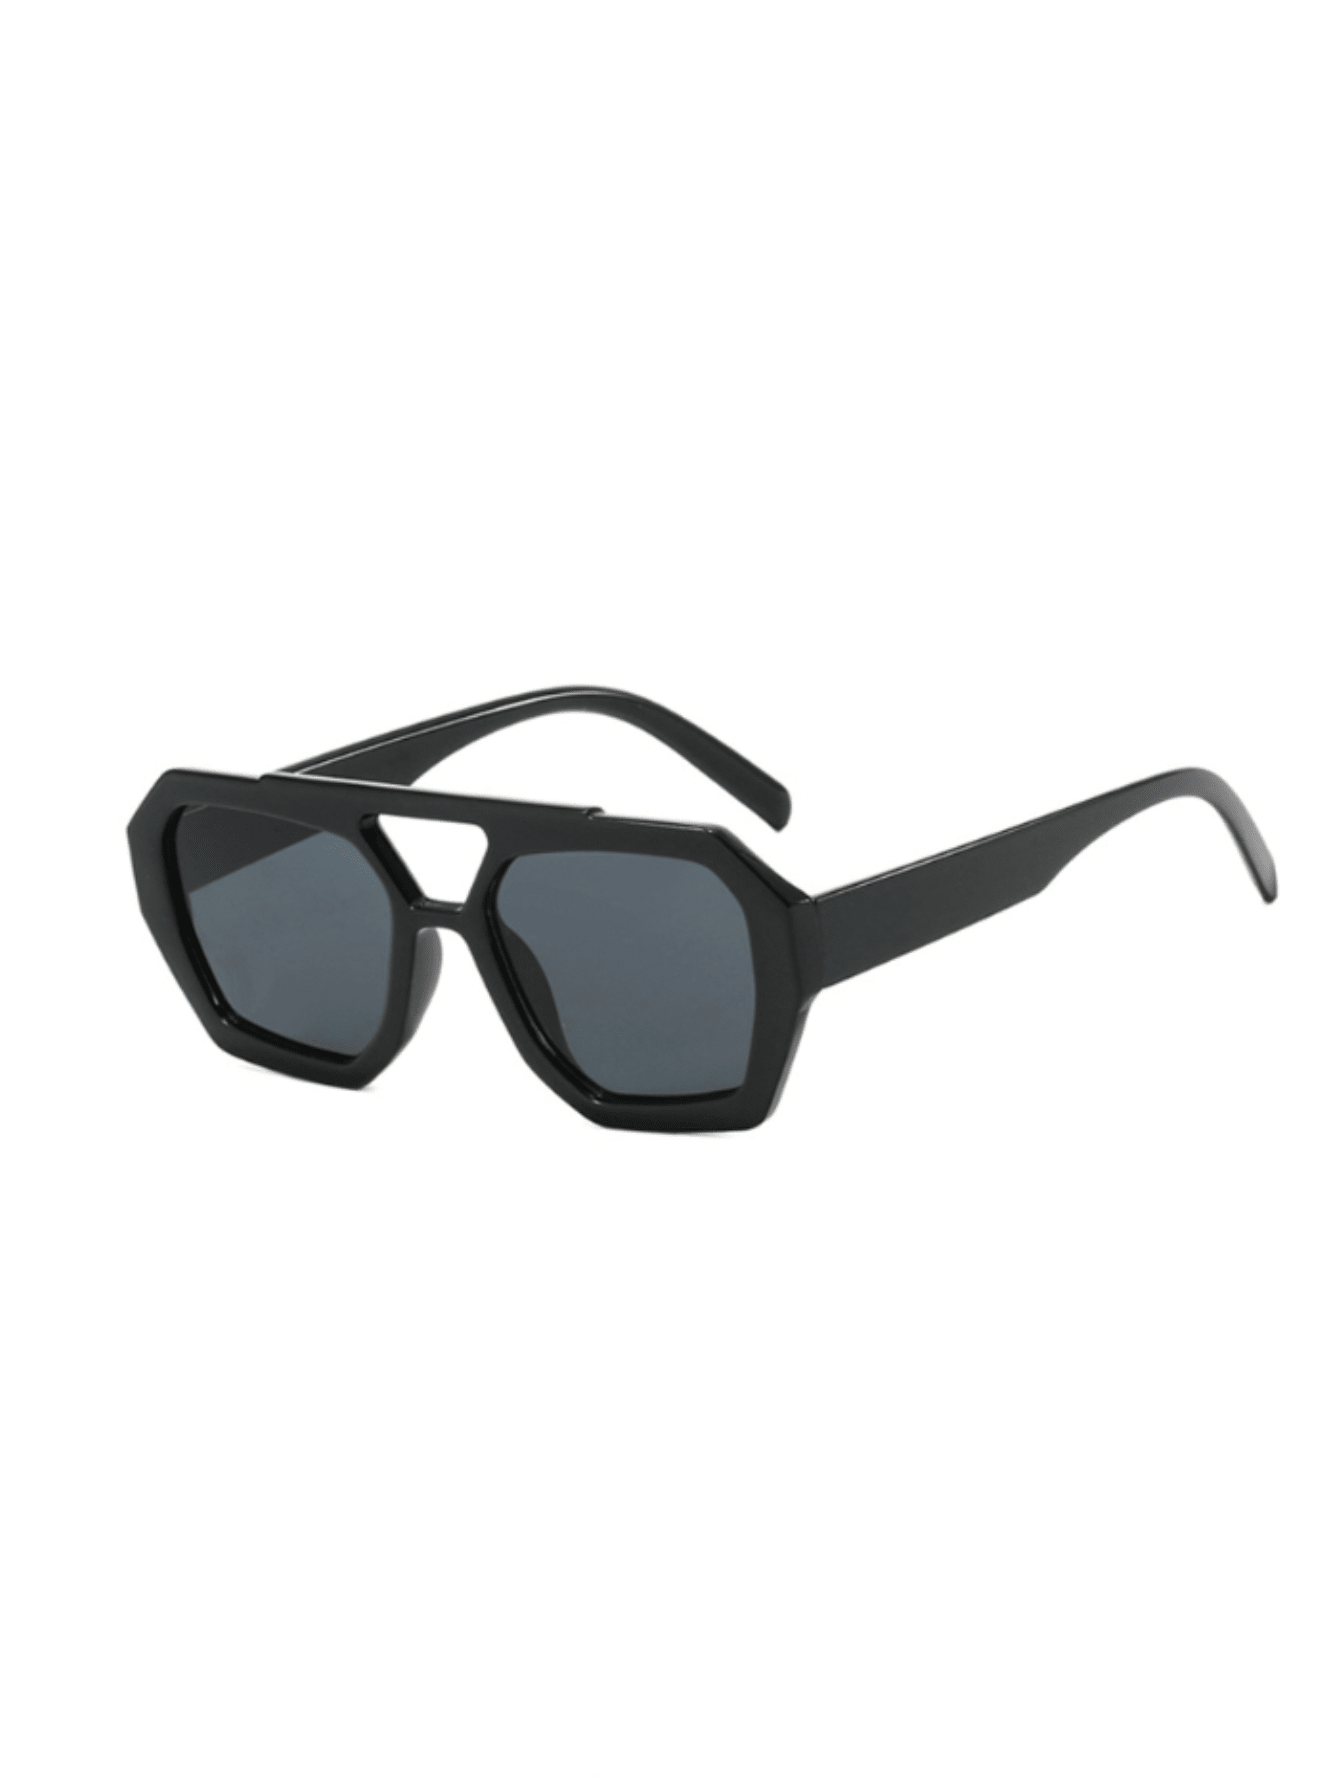 винтажные квадратные солнцезащитные очки авиаторы для мужчин и женщин Новые модные квадратные солнцезащитные очки с двойным лучом для мужчин и женщин